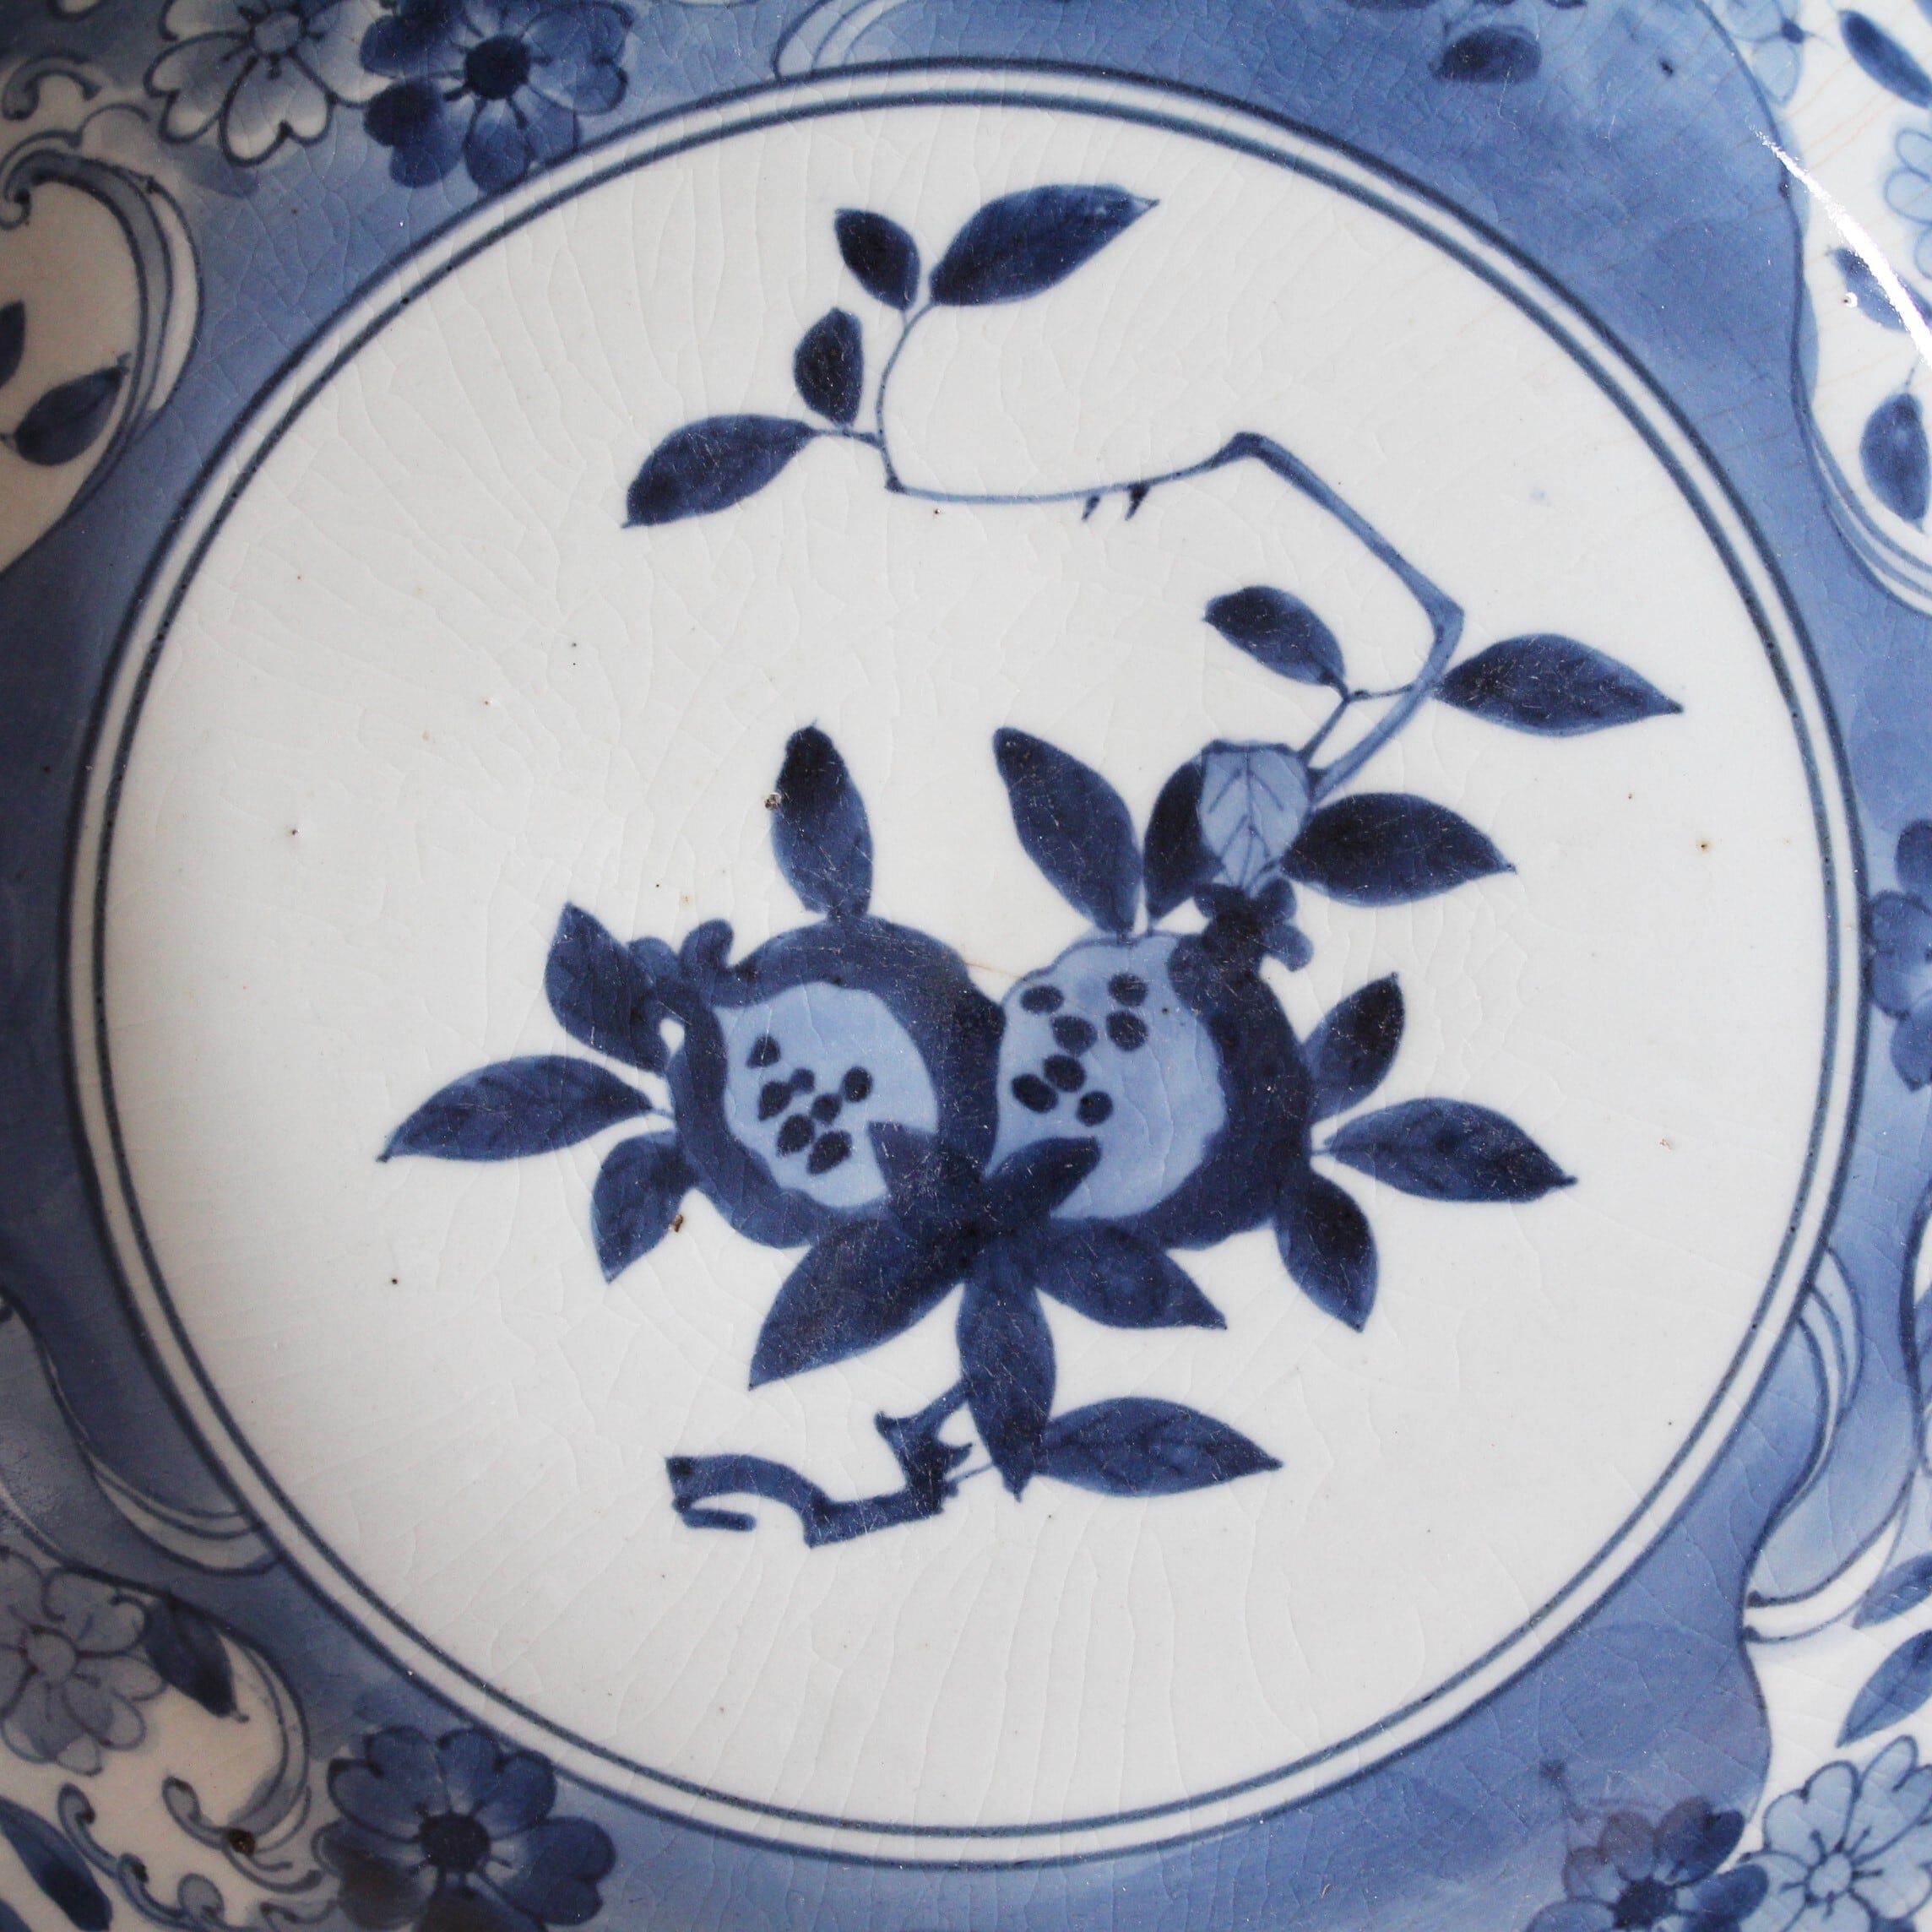 古伊万里染付柘榴花筏文大皿 d31.6cm　Imari Blue and White Large Dish, Design of  Pomegranates and Sakura Cherry Blossom Petals Floating on Waves　17th-18th C